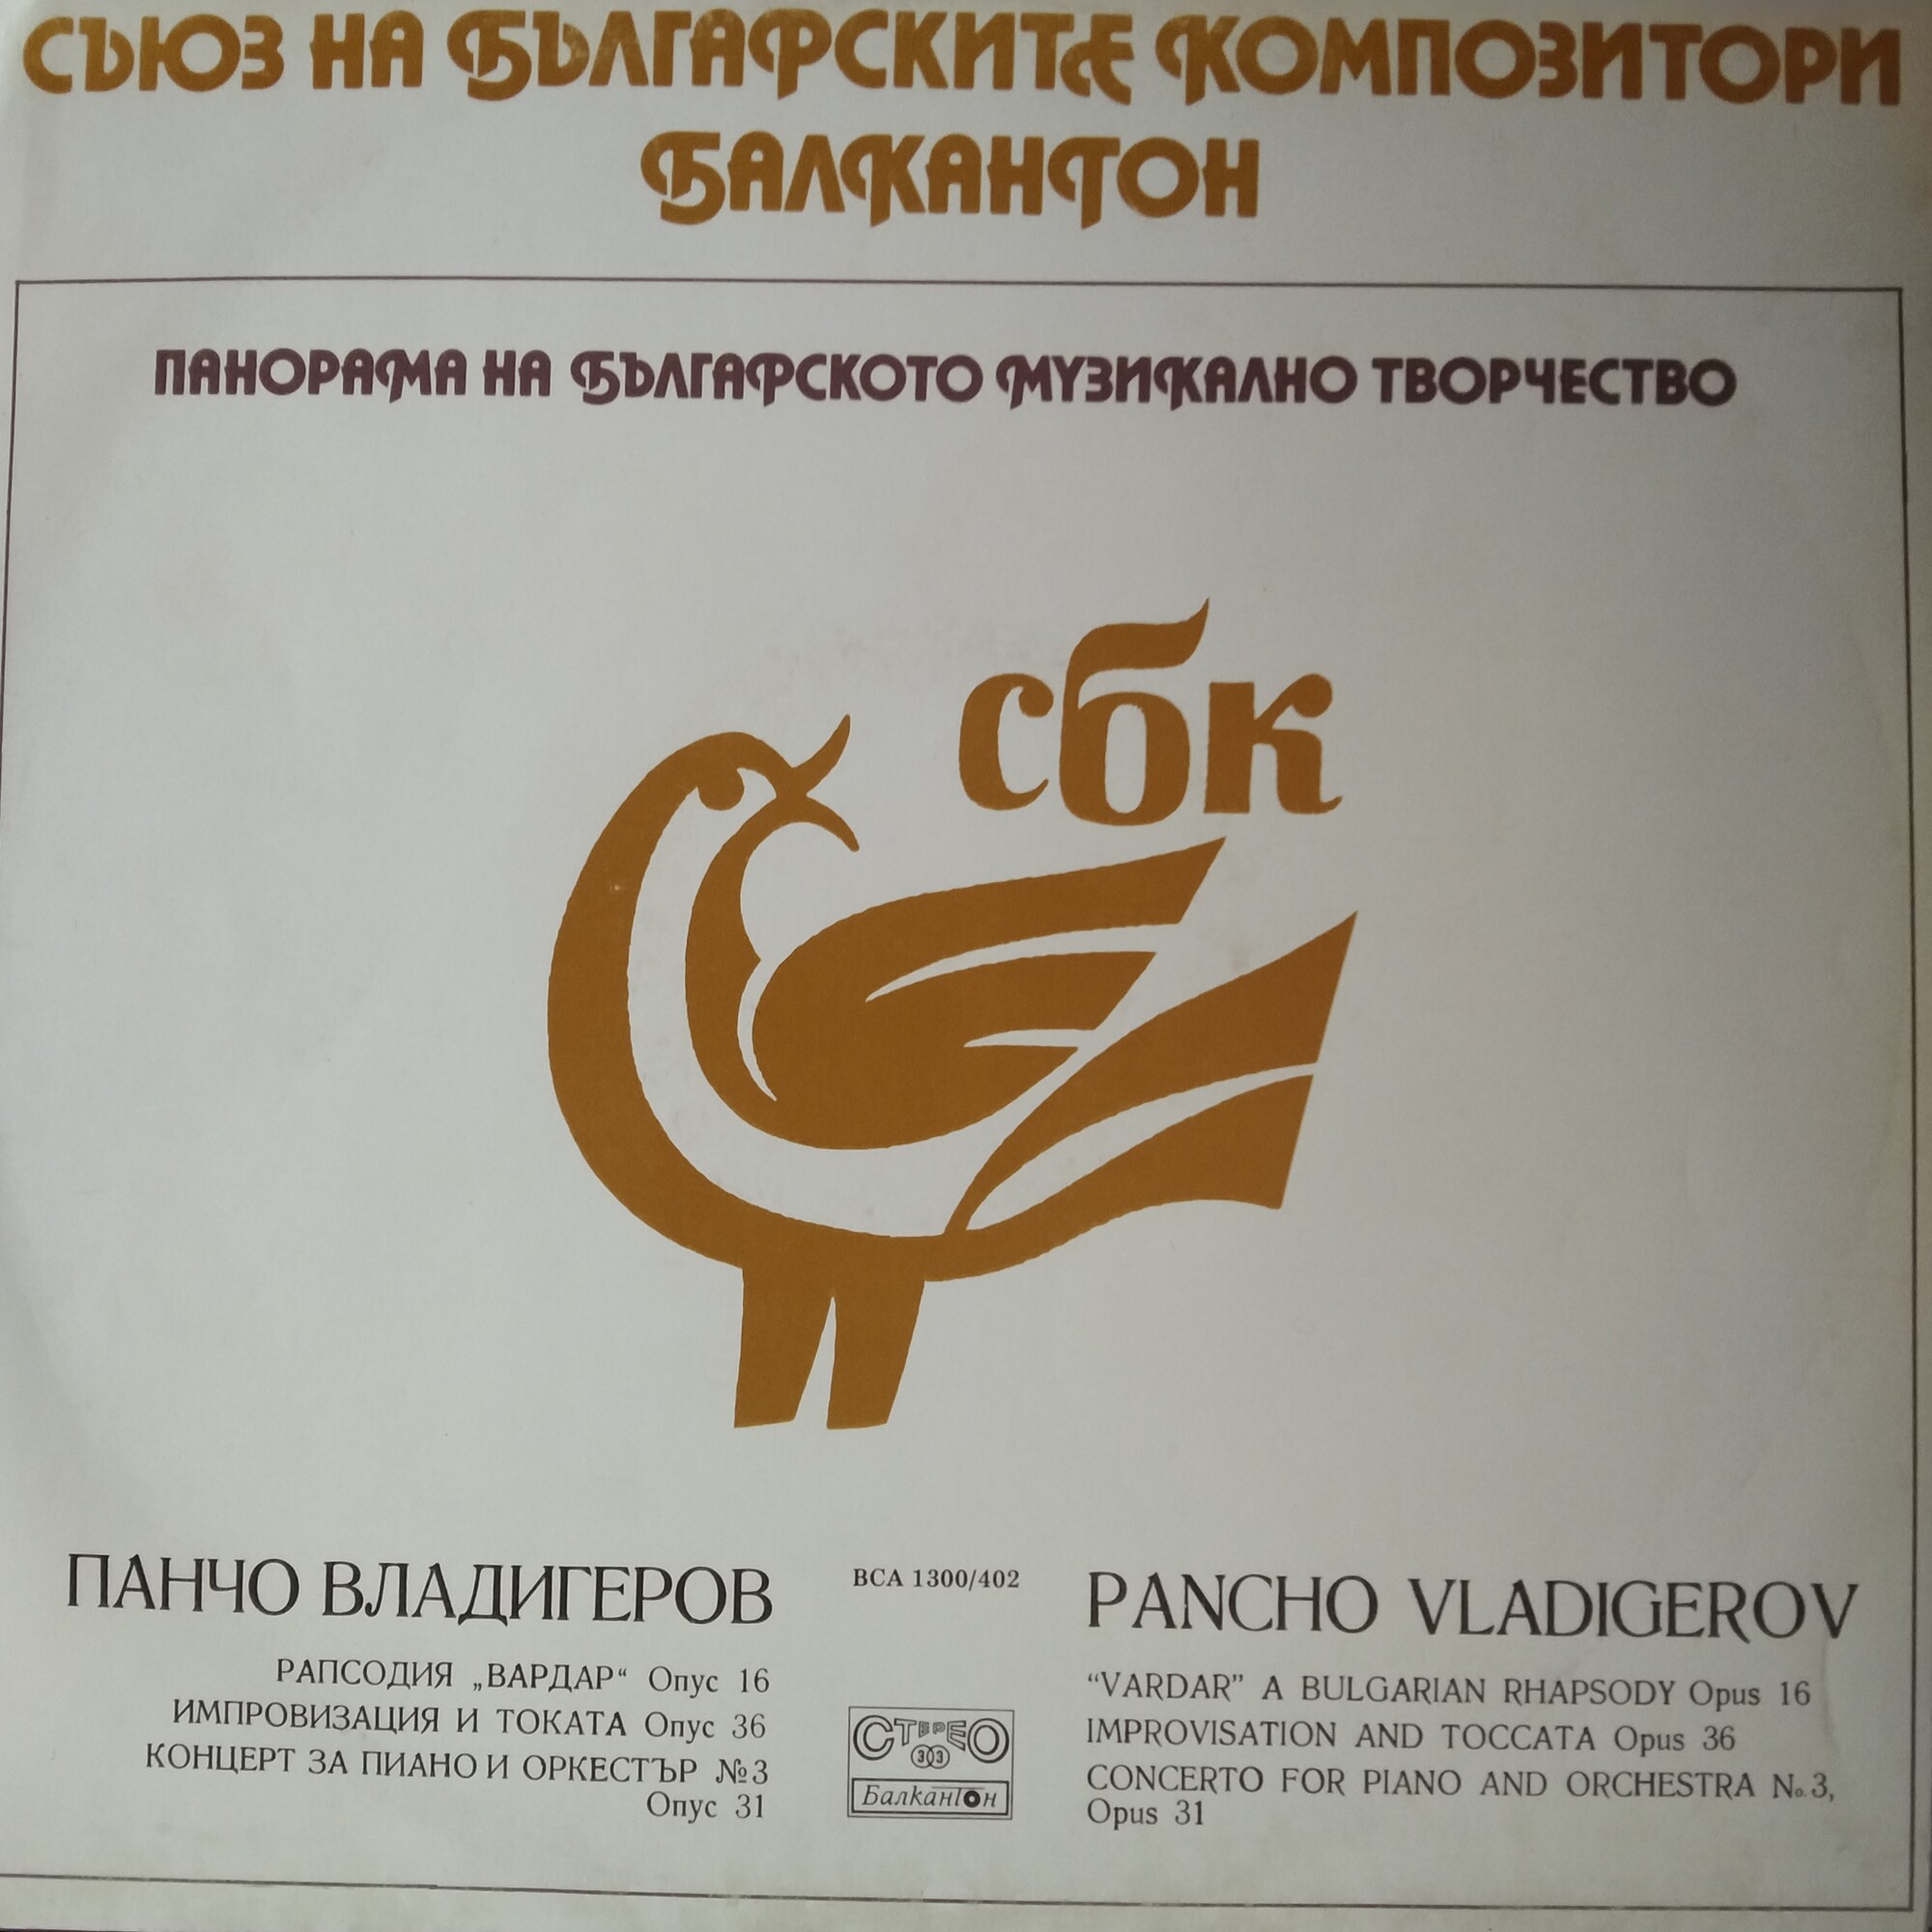 Панорама на българското музикално творчество. Панчо ВЛАДИГЕРОВ